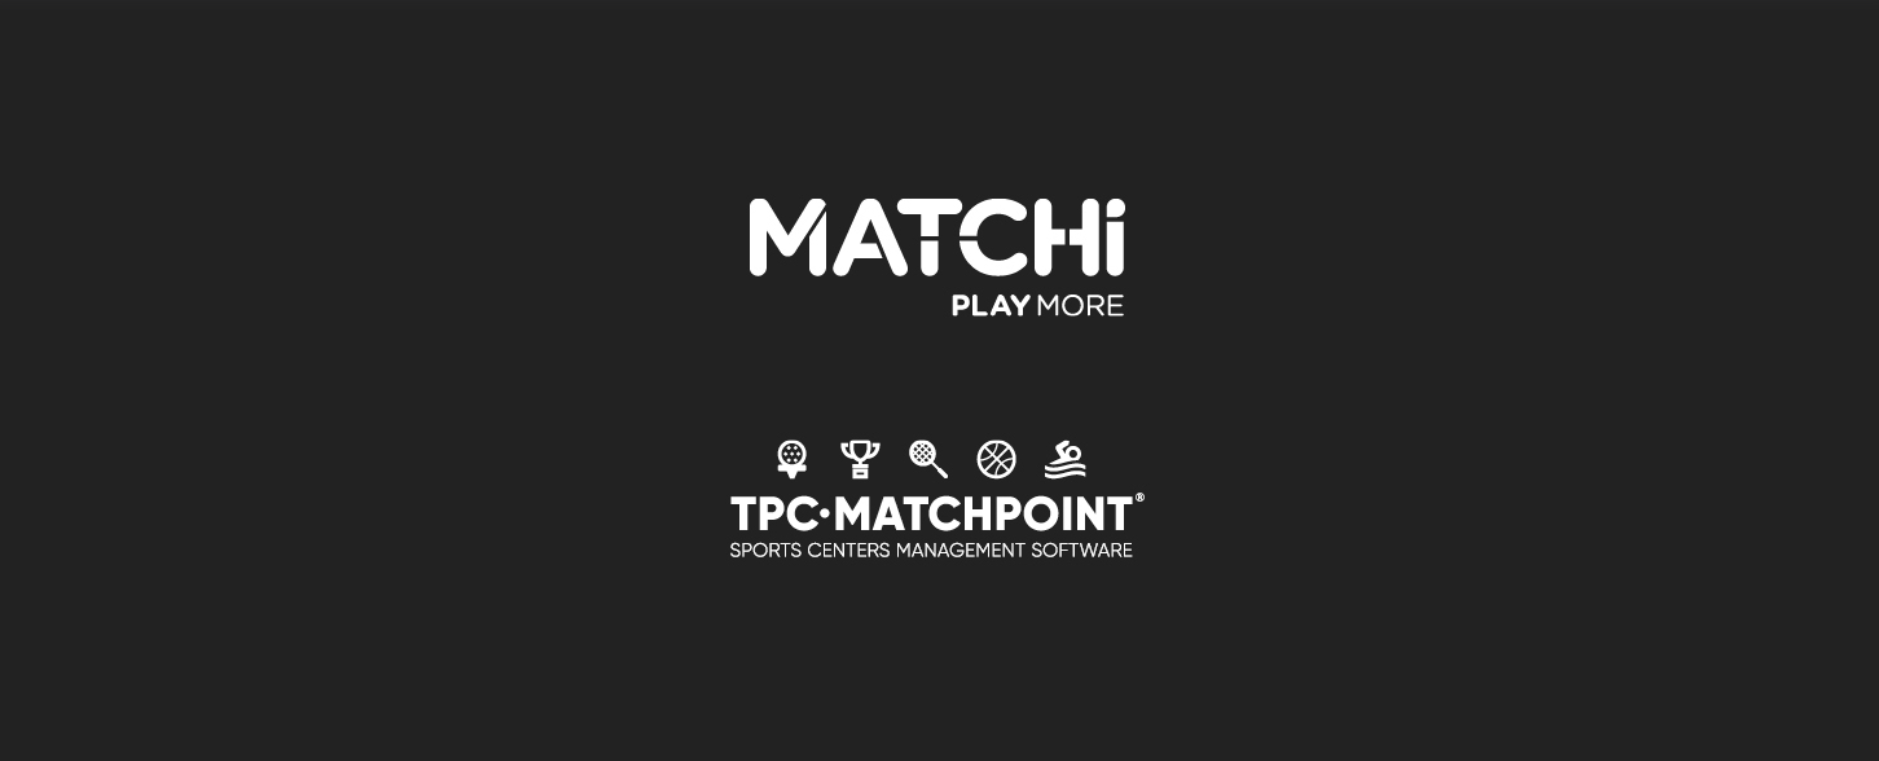 MatchiTPCマッチポイントコラボレーション